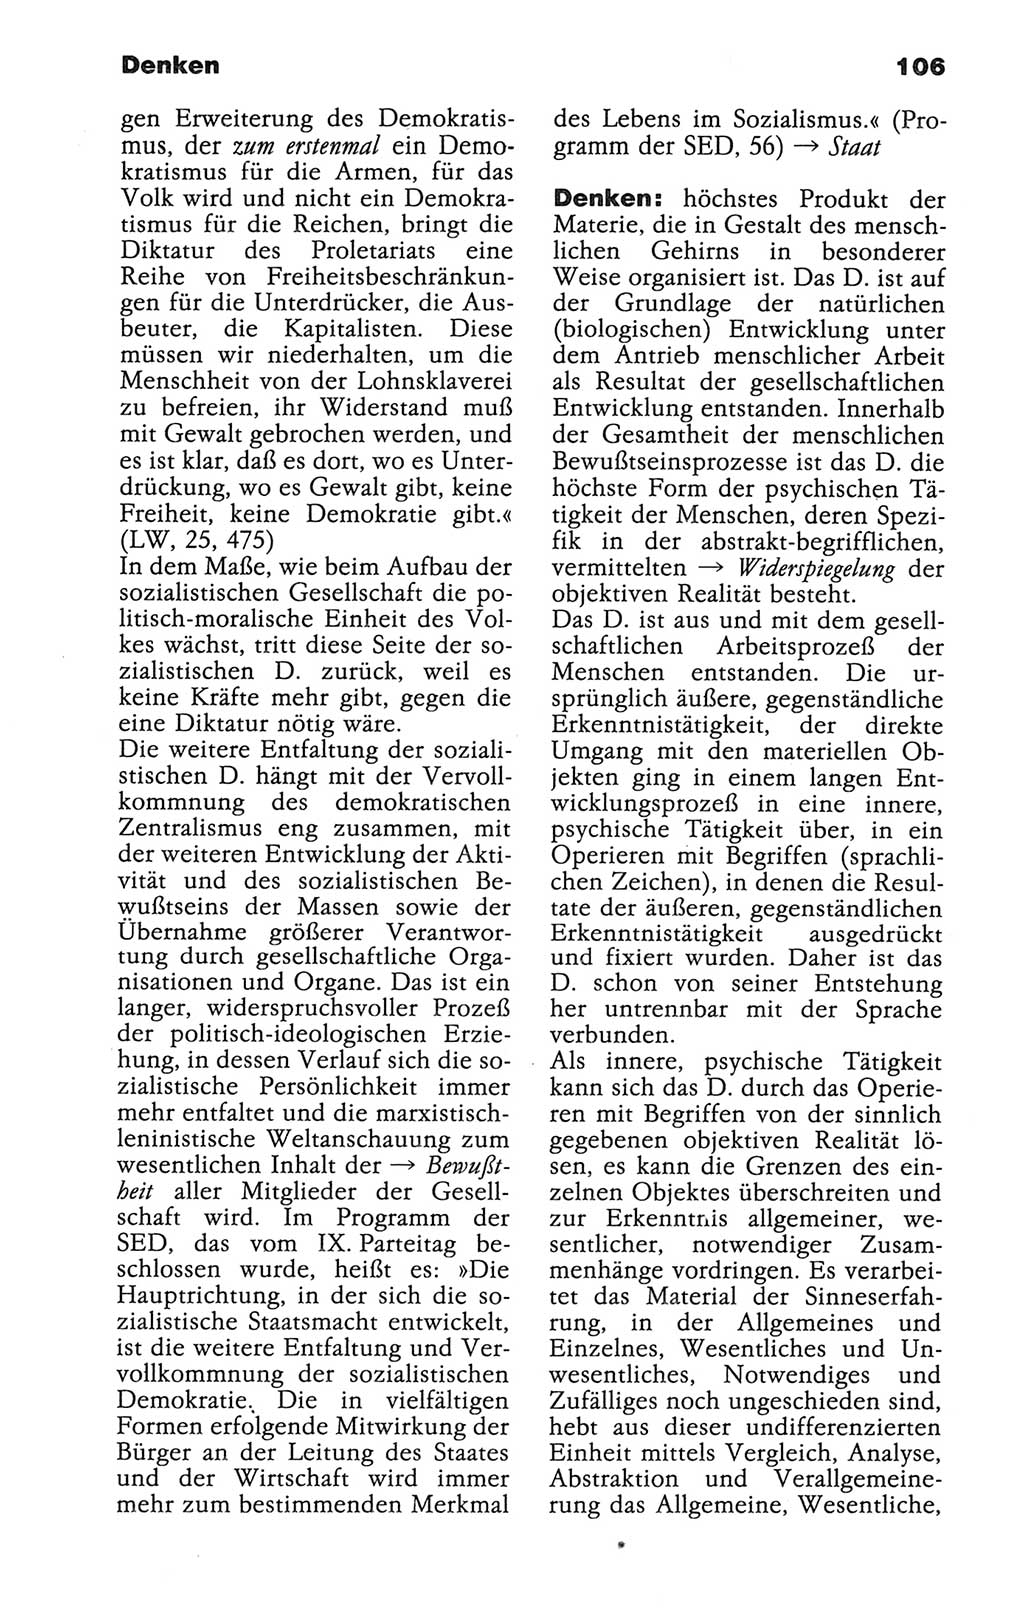 Wörterbuch der marxistisch-leninistischen Philosophie [Deutsche Demokratische Republik (DDR)] 1986, Seite 106 (Wb. ML Phil. DDR 1986, S. 106)